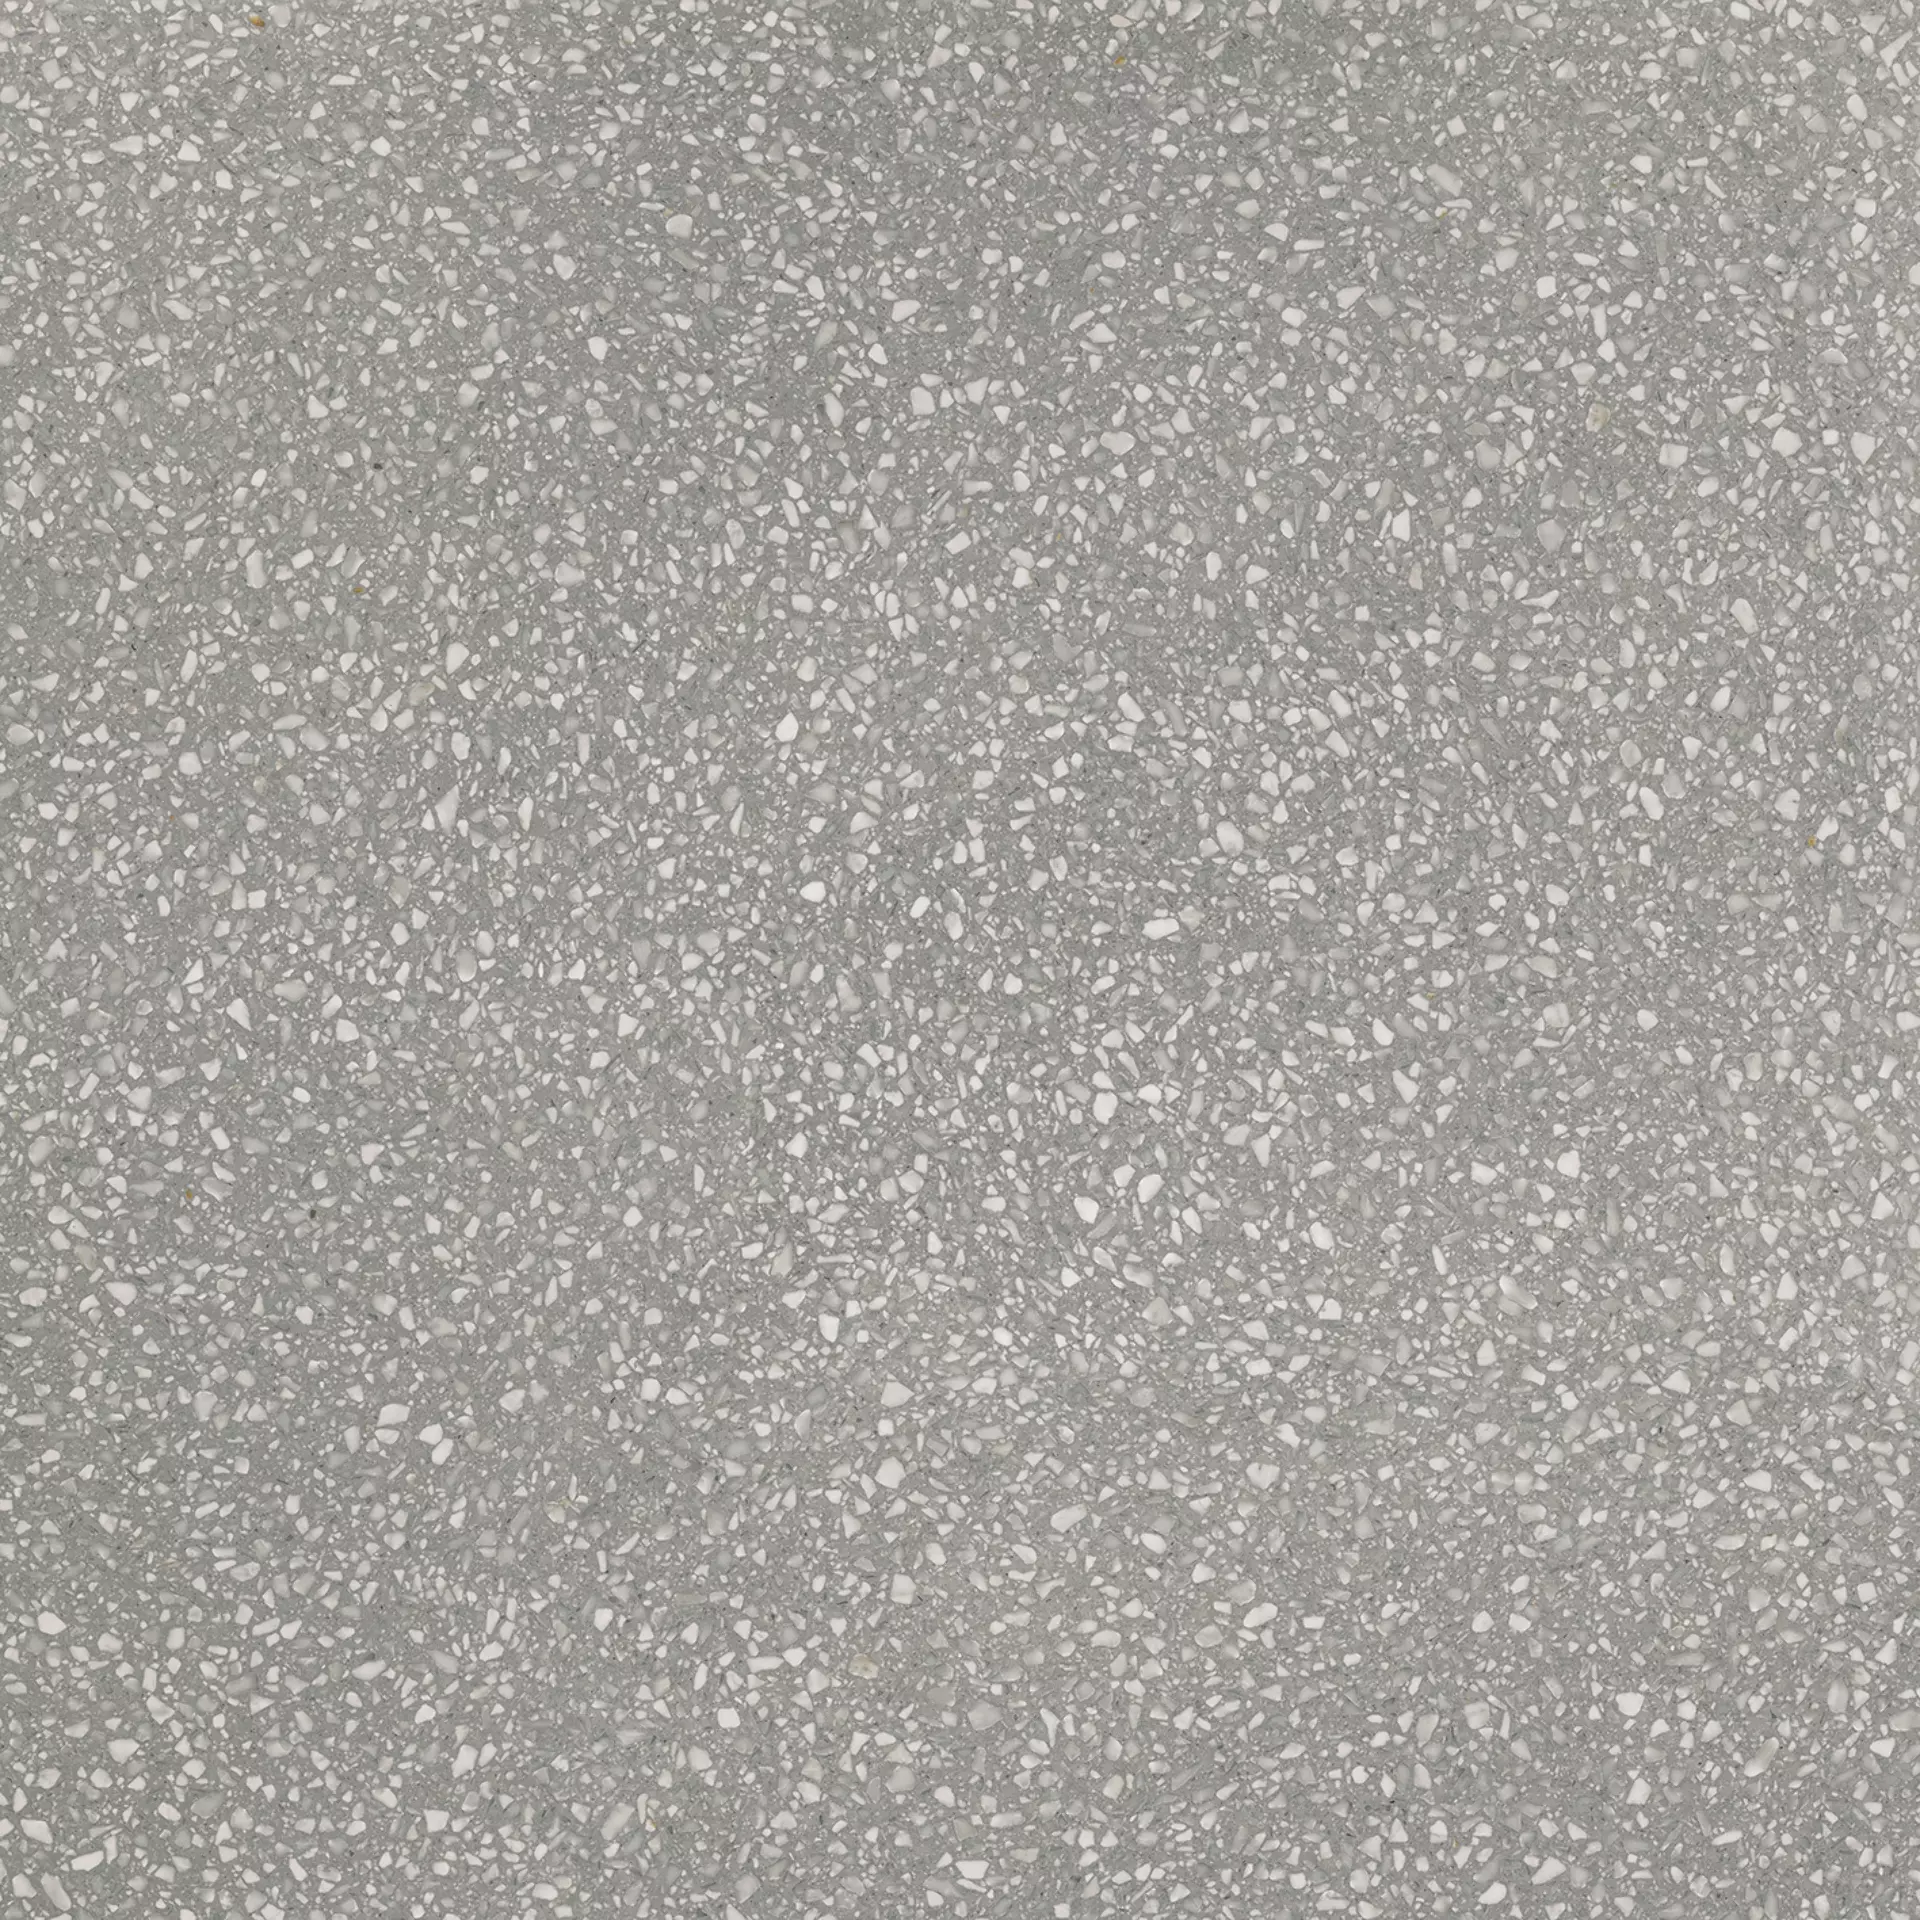 Villeroy & Boch Sparks Pearl Grey Matt 2757-TE60 120x120cm rectified 9mm